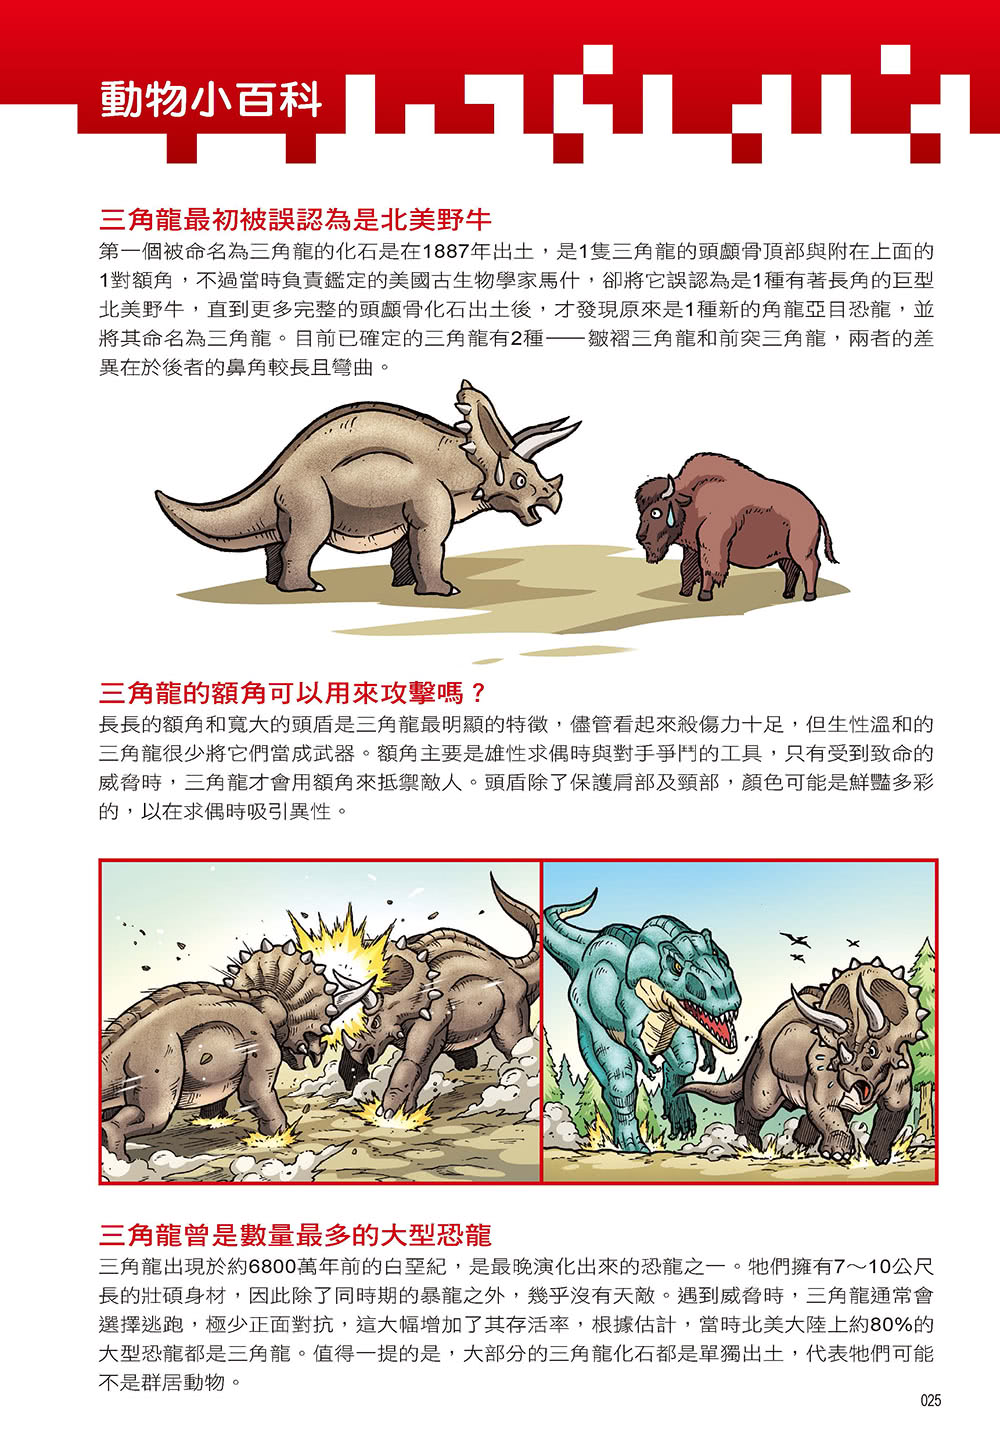 Ｘ萬獸探險隊Ⅱ：（16）萬獸之王VS恐龍世紀（附學習單）